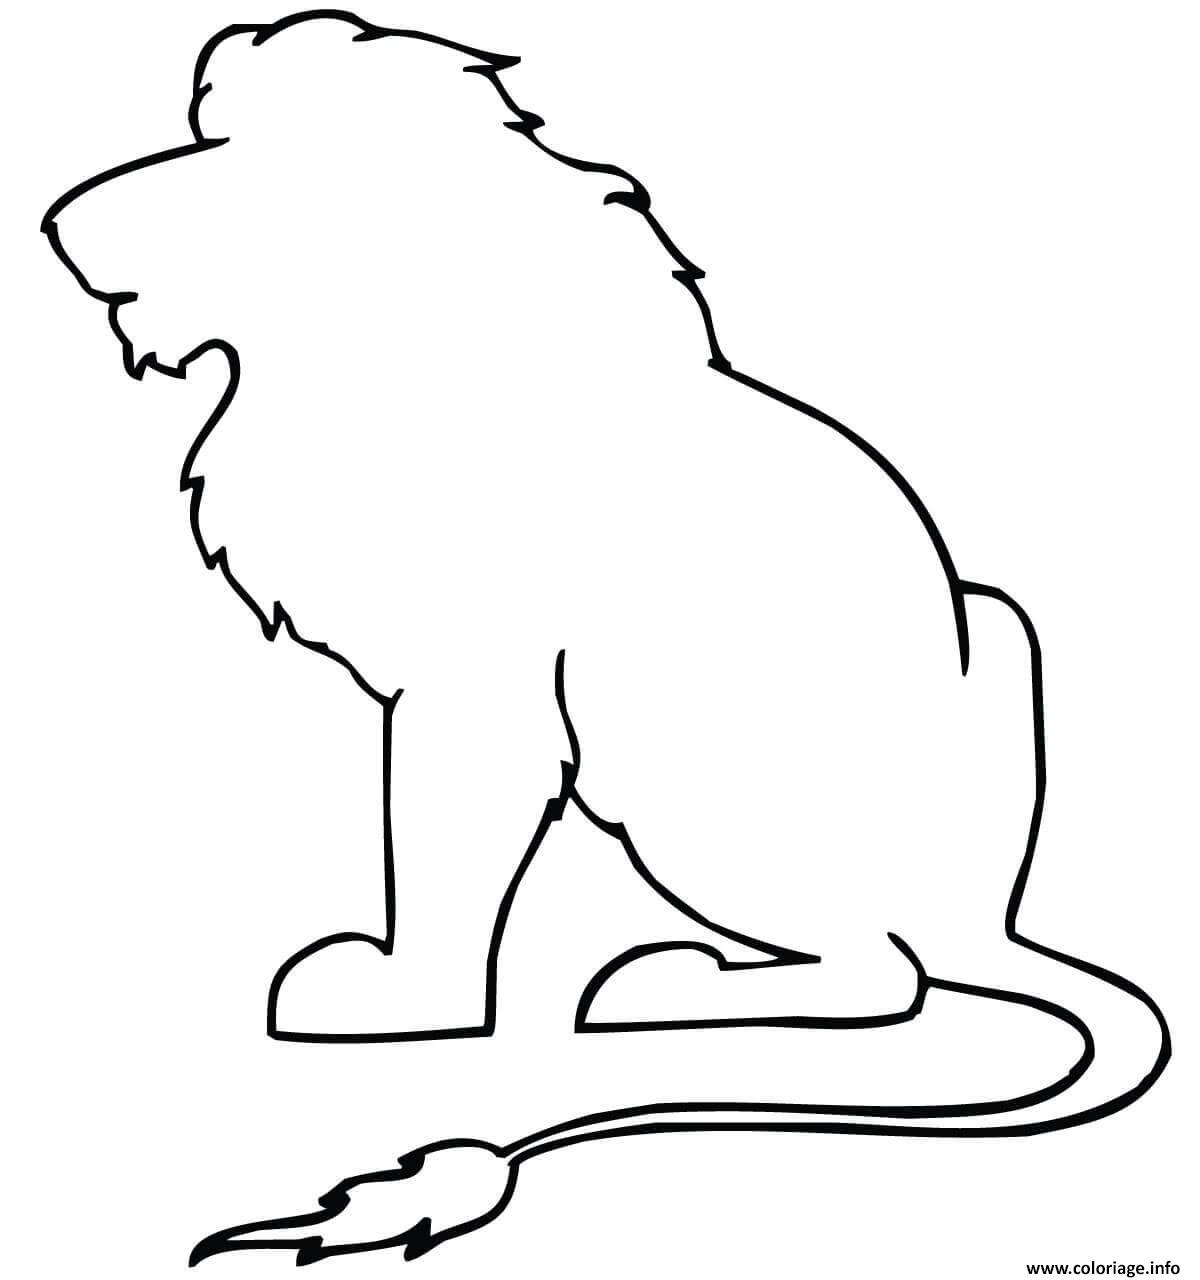 Dessin sitting lion outline Coloriage Gratuit à Imprimer